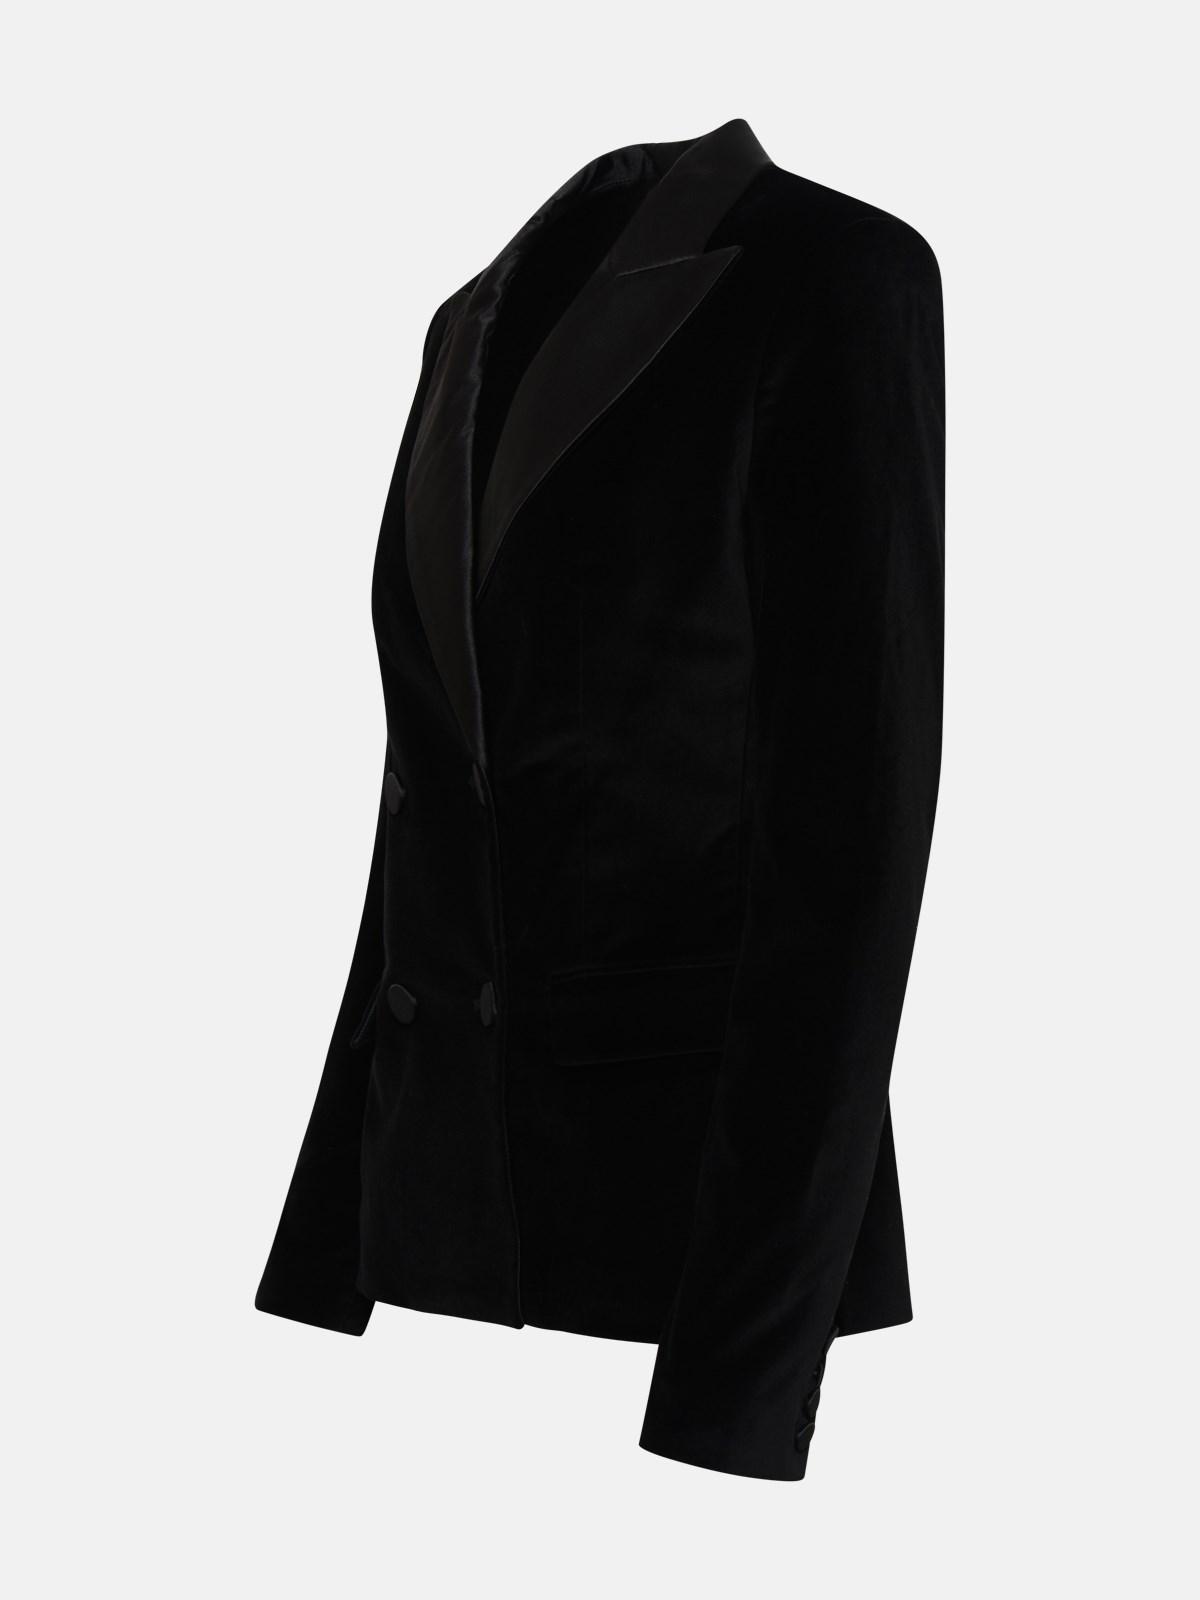 MICHAEL Michael Kors Velvet Blazer Jacket in Black | Lyst